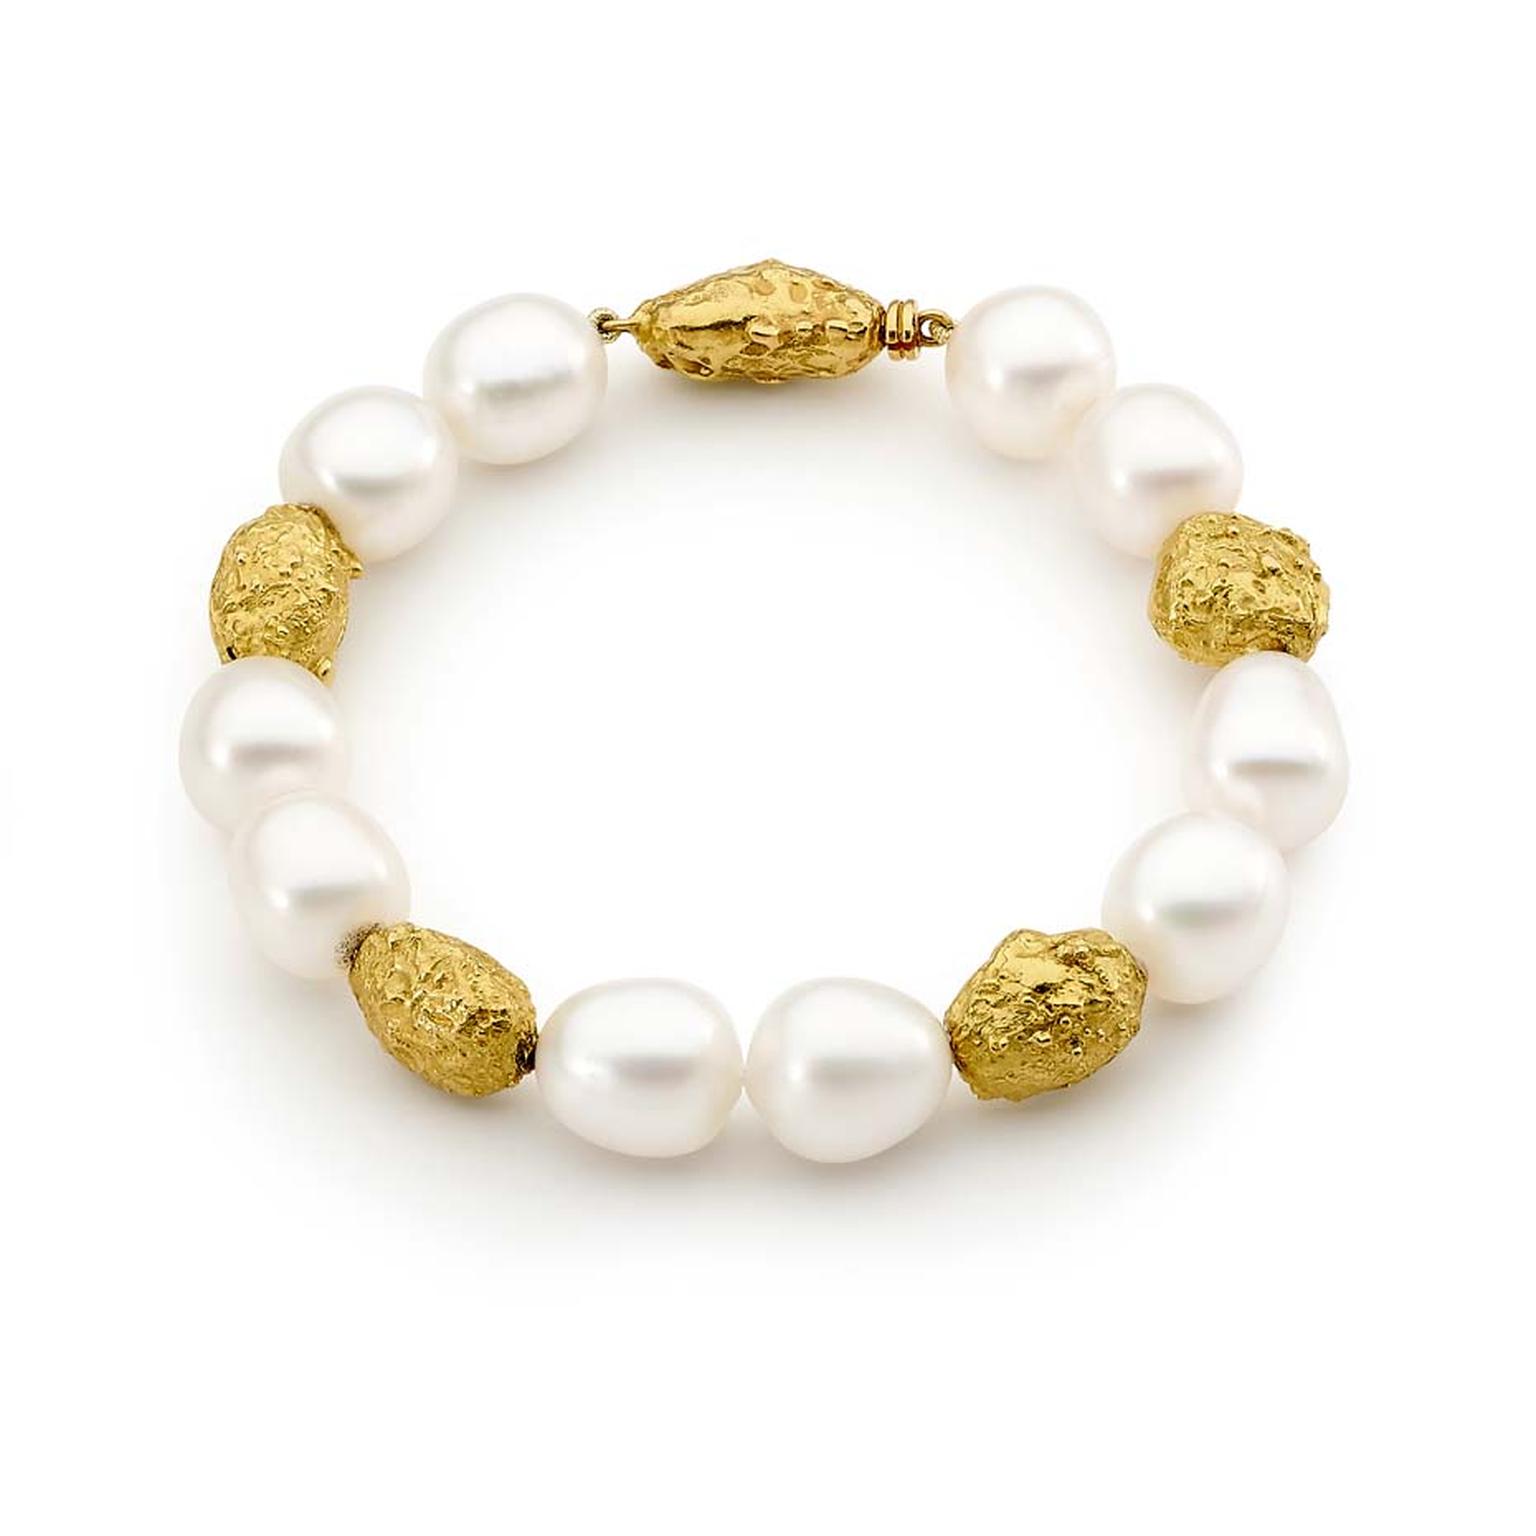 Australian Pearls_Linneys_yellow gold Australian South Sea pearl bracelet $8500.jpg